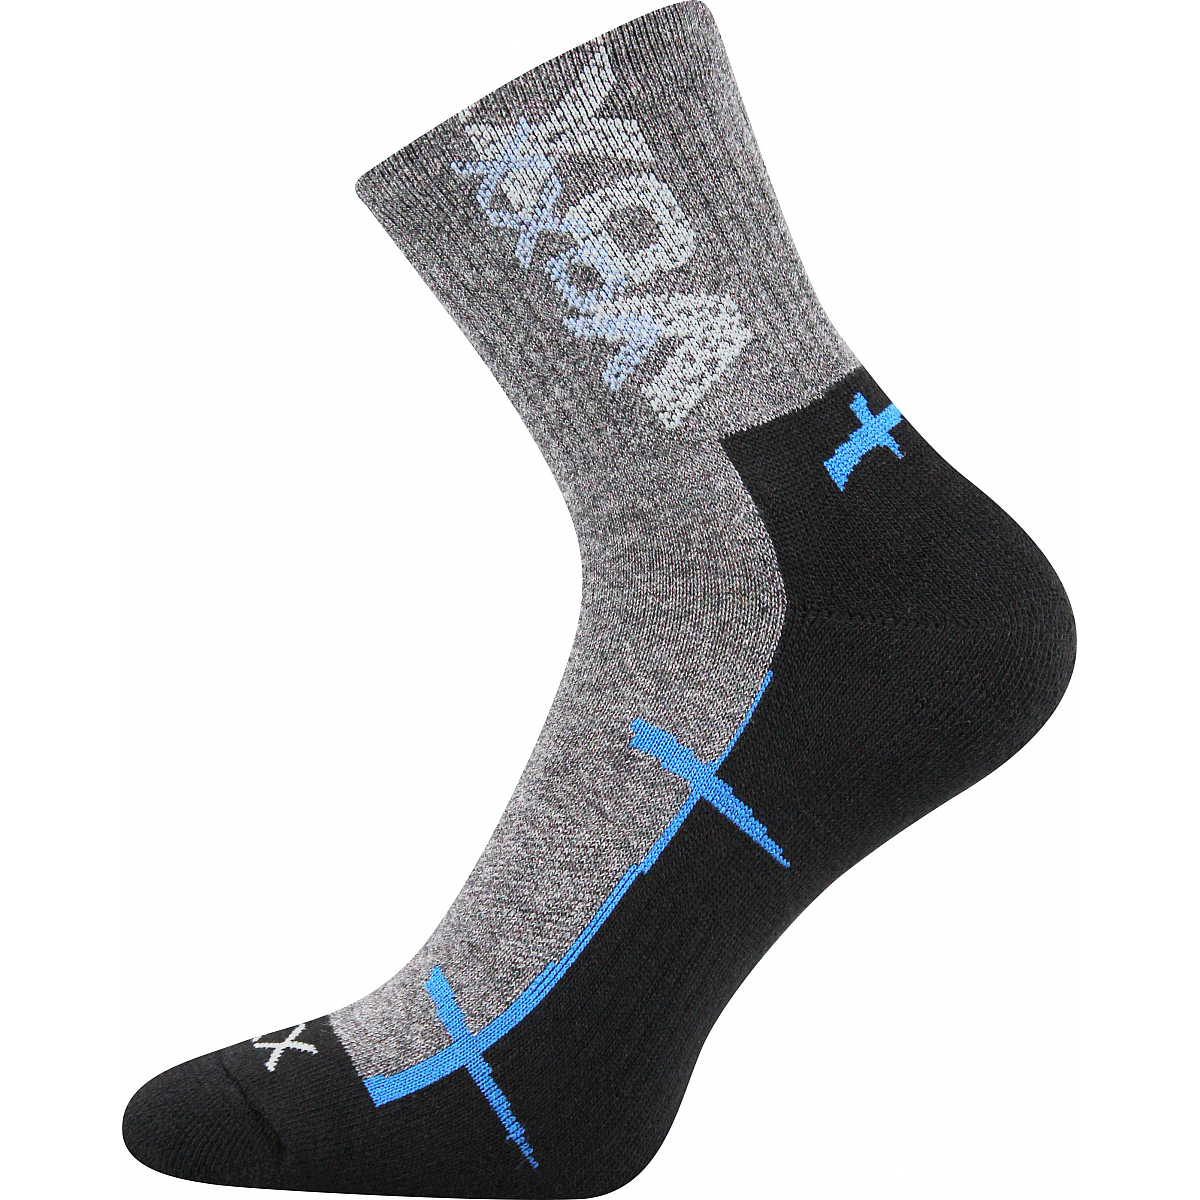 Sportovní ponožky Voxx Walli - šedé-černé, 35-38